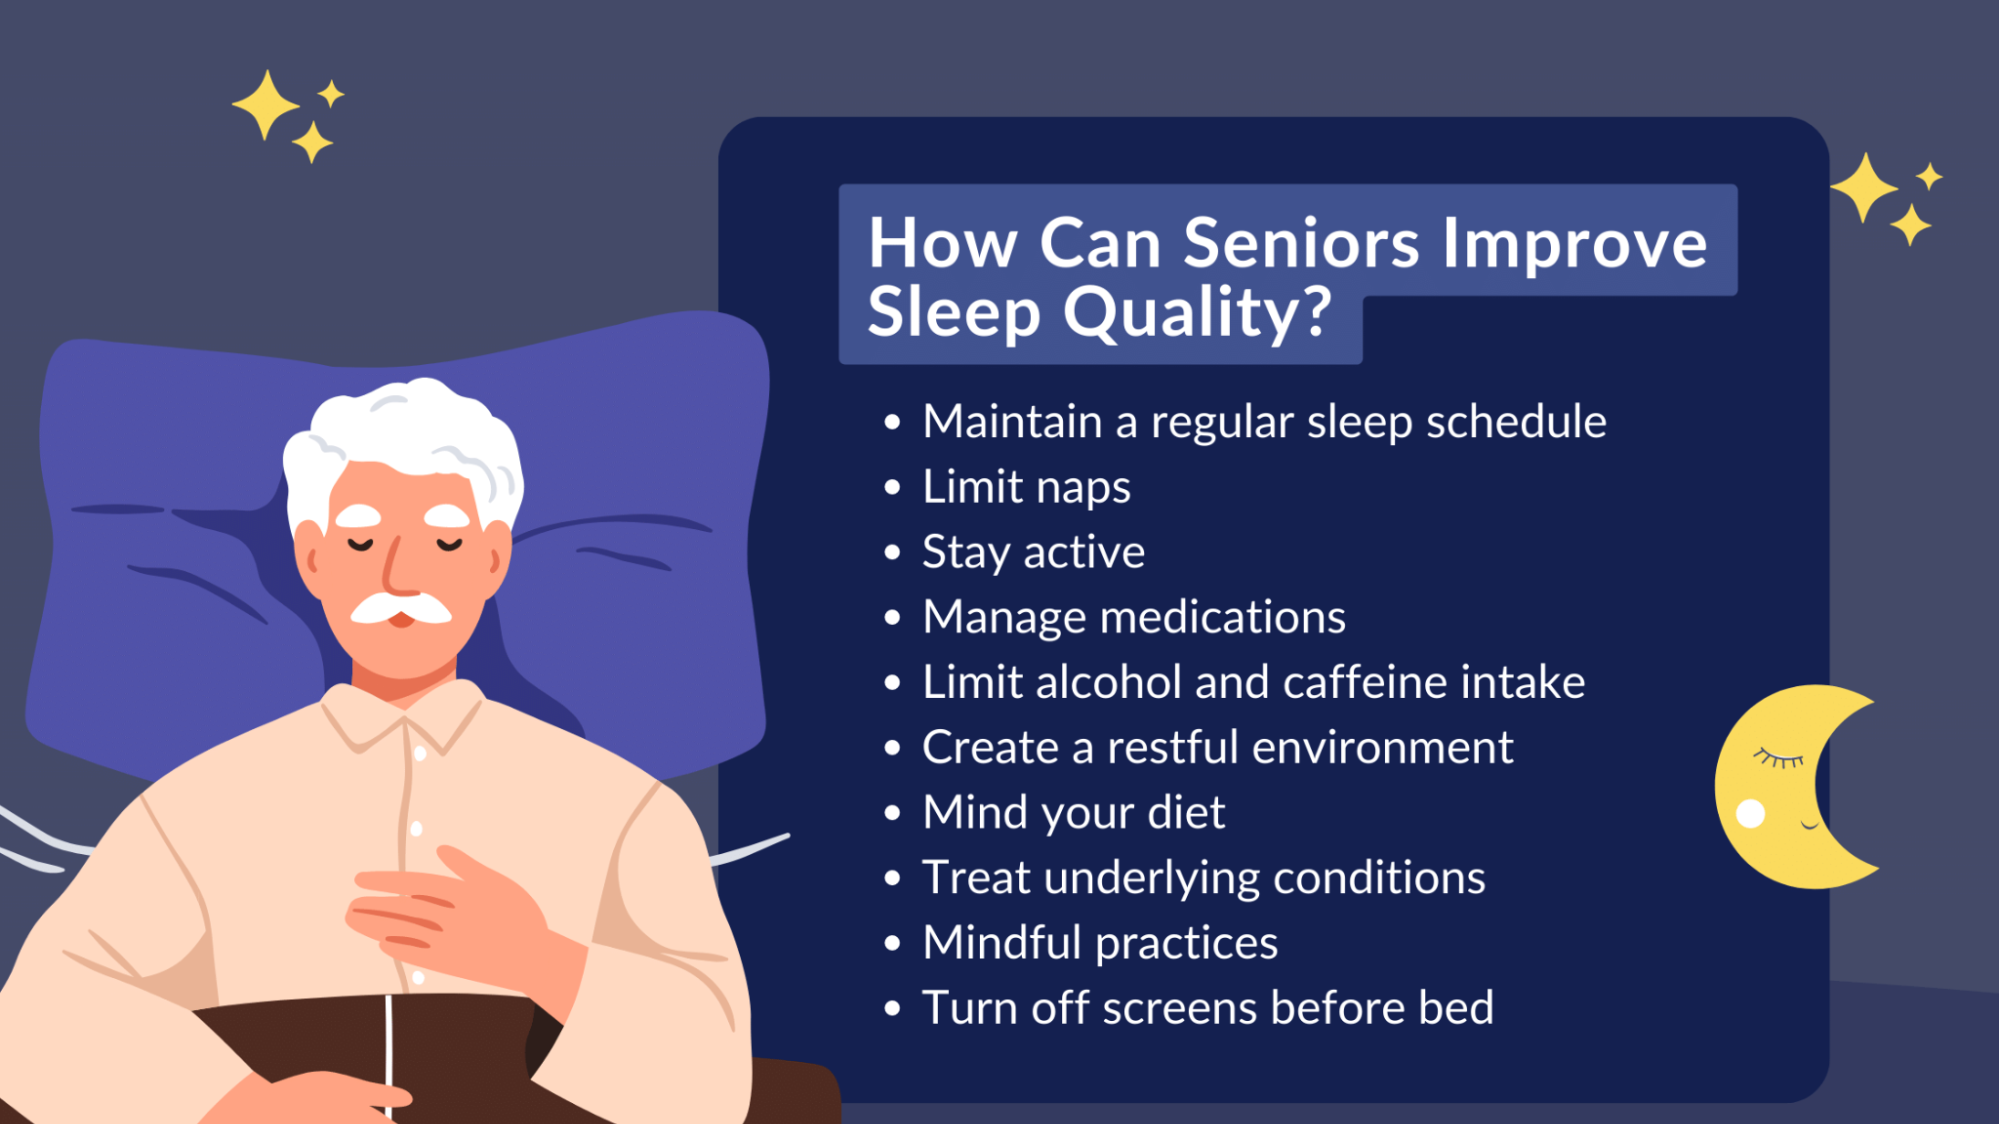 How Can Seniors Improve Sleep Quality?